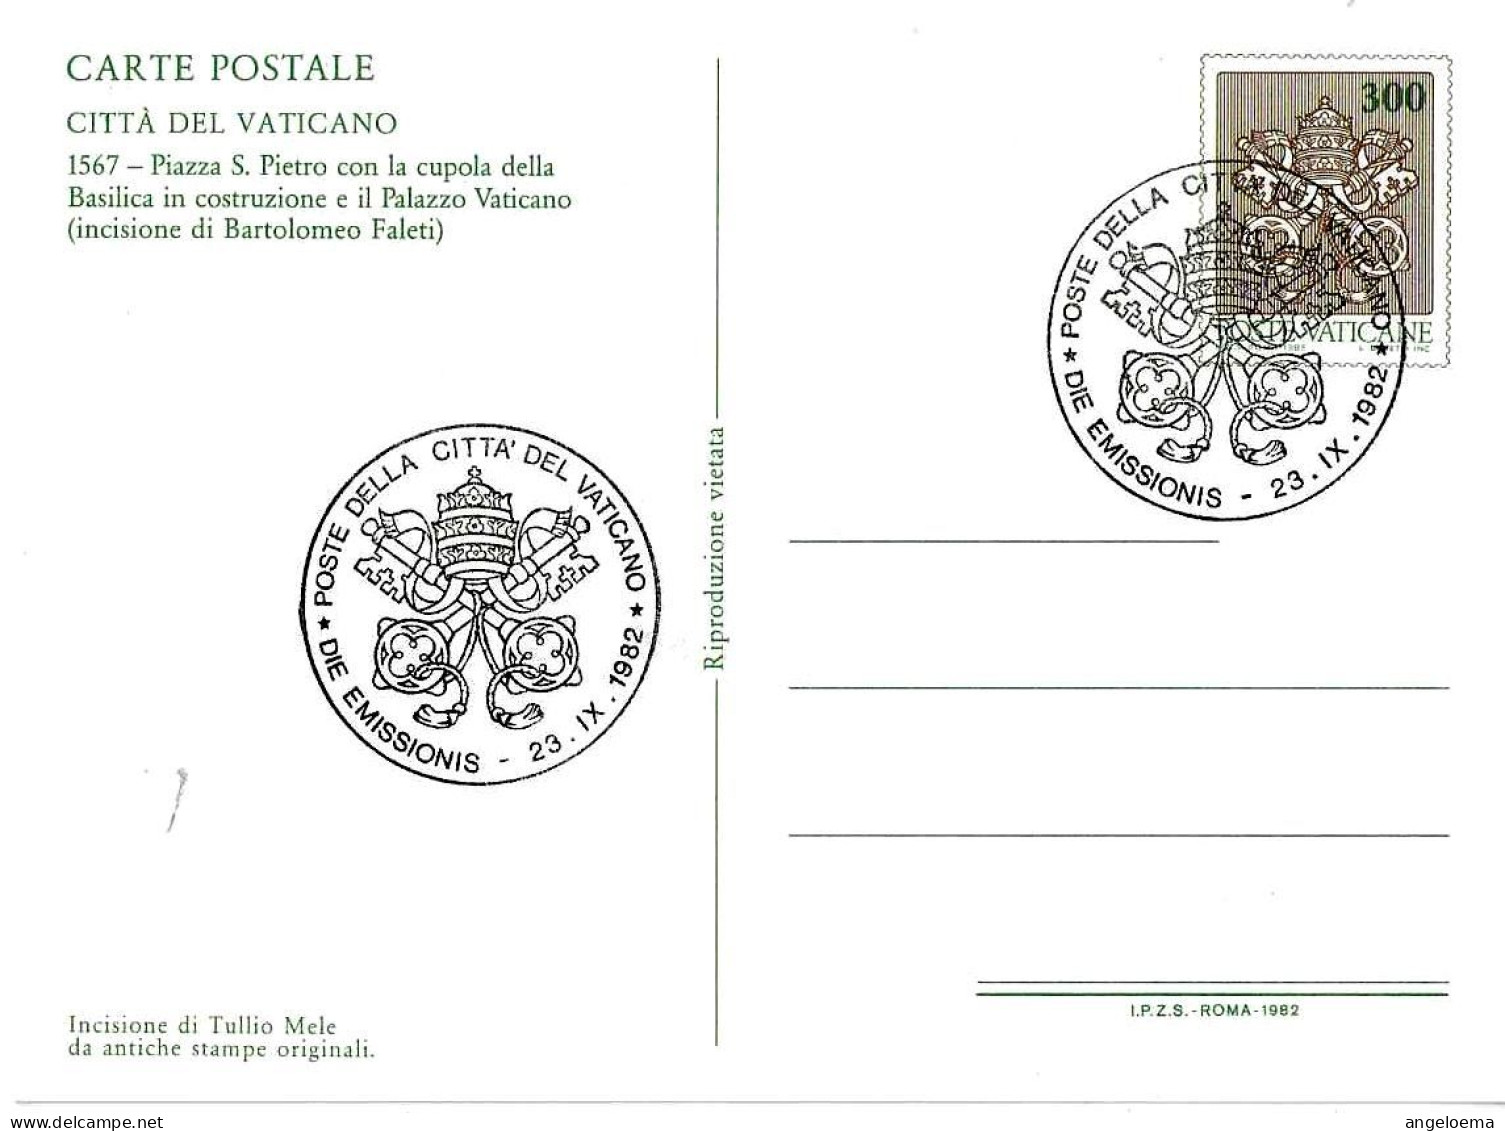 VATICANO -1982 Vedute Incisioni (S.Pietro Con Cupola In Costruzione) Su Cartolina Postale CP £.300 Con Annullo Fdc -1441 - Cristianismo